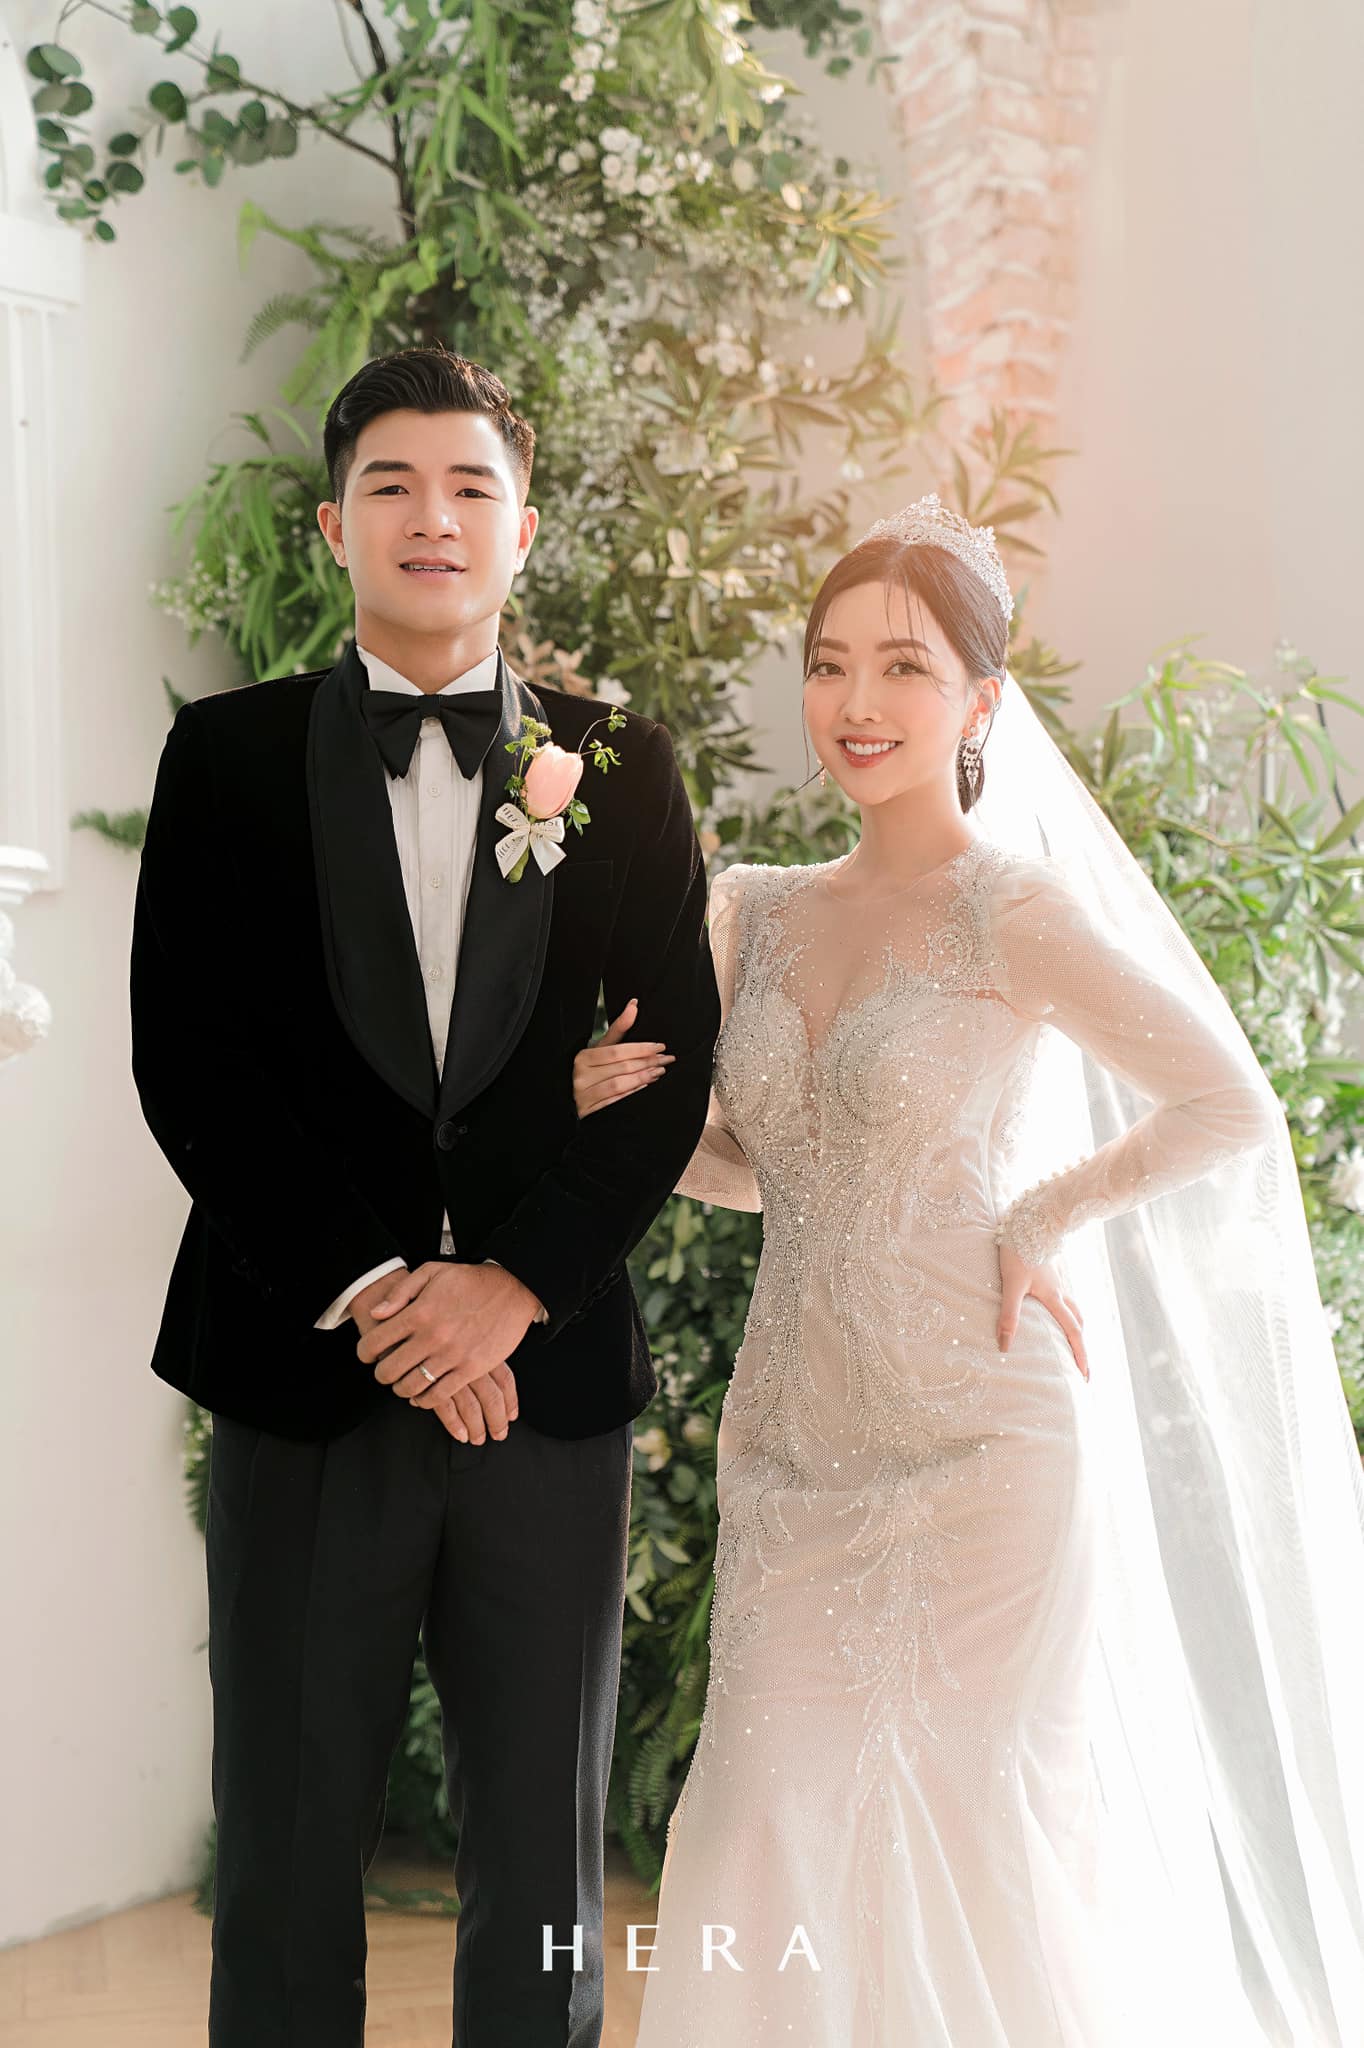 Cầu thủ Hà Đức Chinh tung ảnh cưới đẹp như mơ bên vợ hotgirl, nhan sắc cô dâu khiến dân tình phải trầm trồ